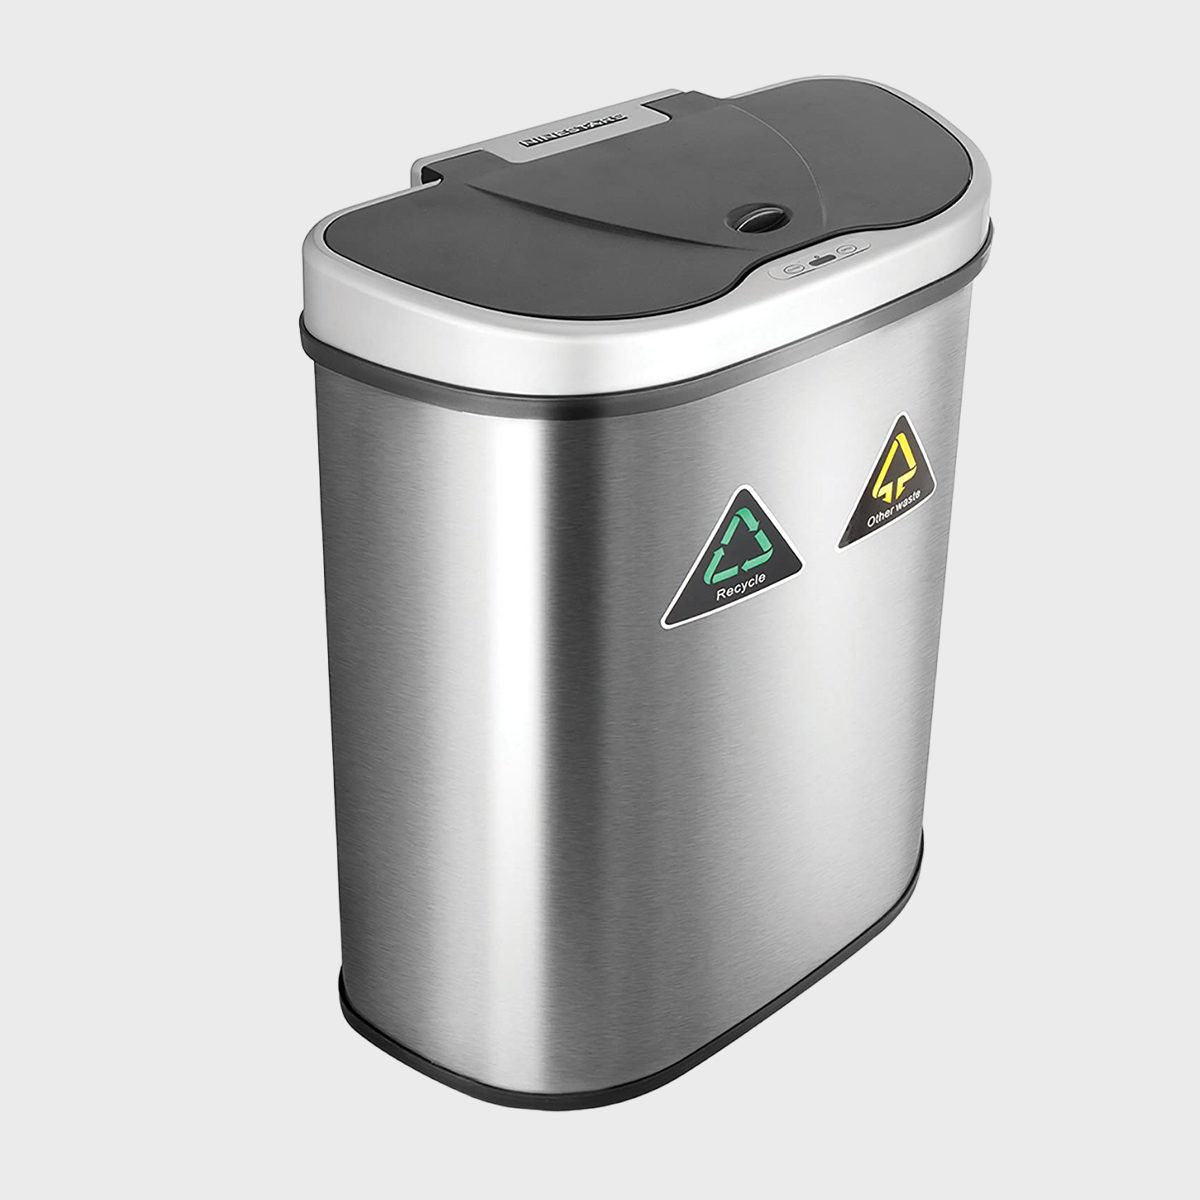 Nine Stars Household Trash Cans & Wastebaskets for sale